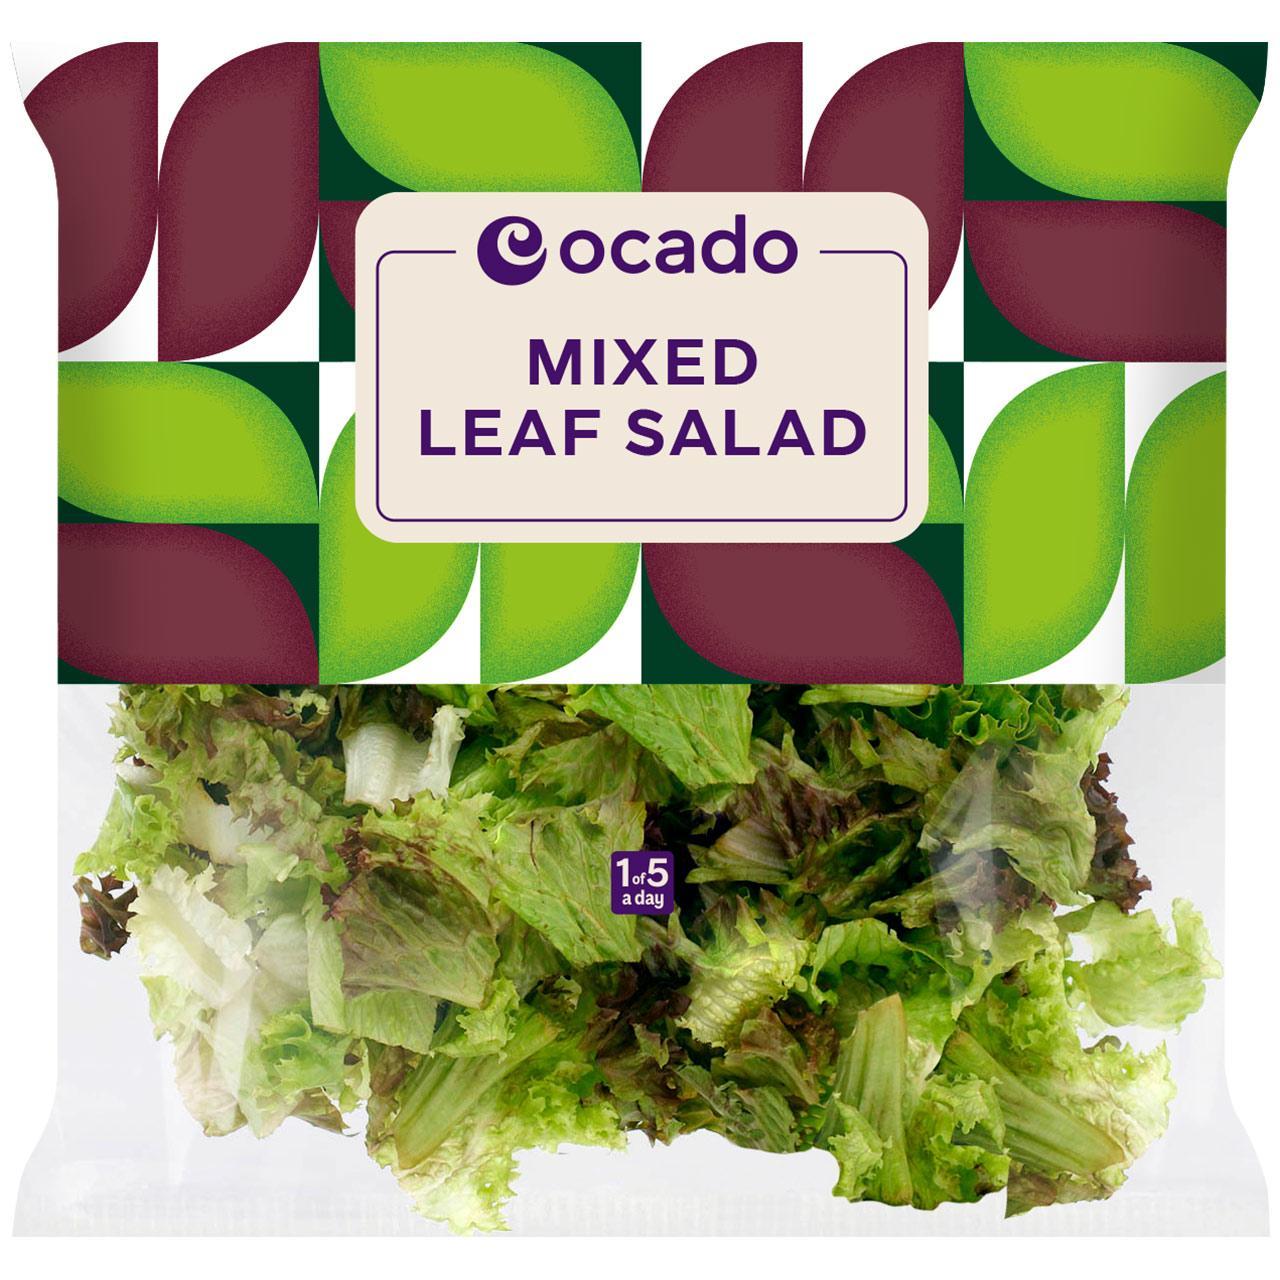 Ocado Mixed Leaf Salad